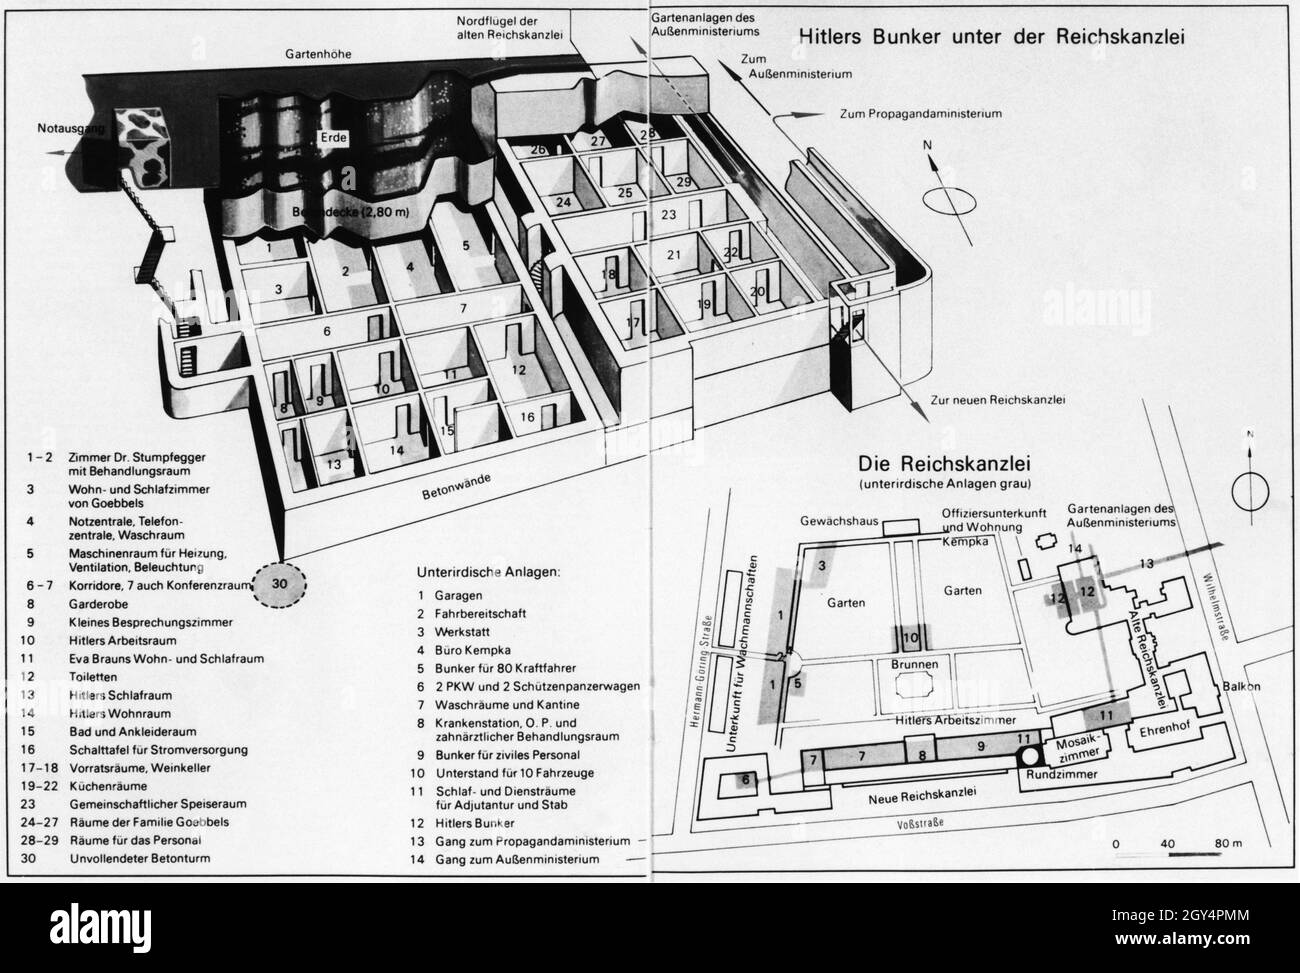 Eine Erhebung der unterirdischen Bunker unter der Reichskanzlei in Berlin  mit Hitlers Schutzräumen. Auch eine Karte des Standortes der neuen und  alten Reichskanzlei. [Automatisierte Übersetzung] Stockfotografie - Alamy